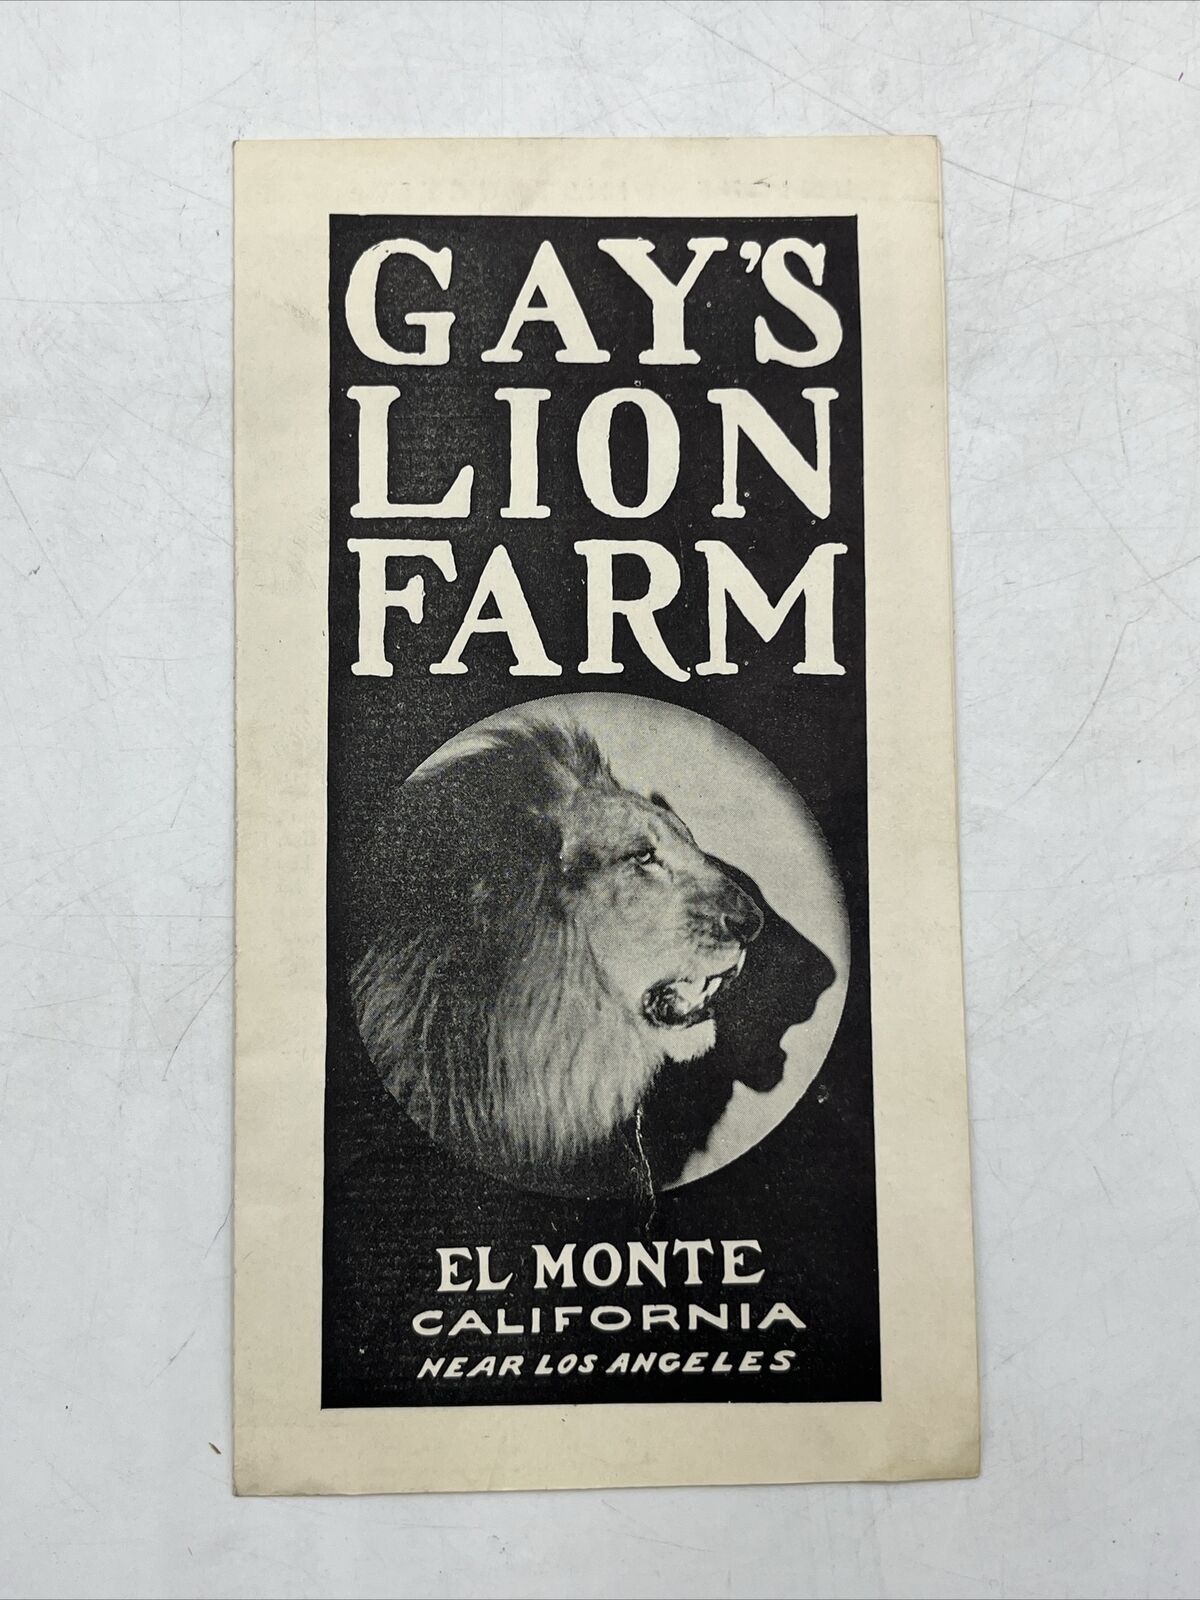 Vintage El Monte California Gay's Lion Farm Brochure El Monte Near Los Angeles